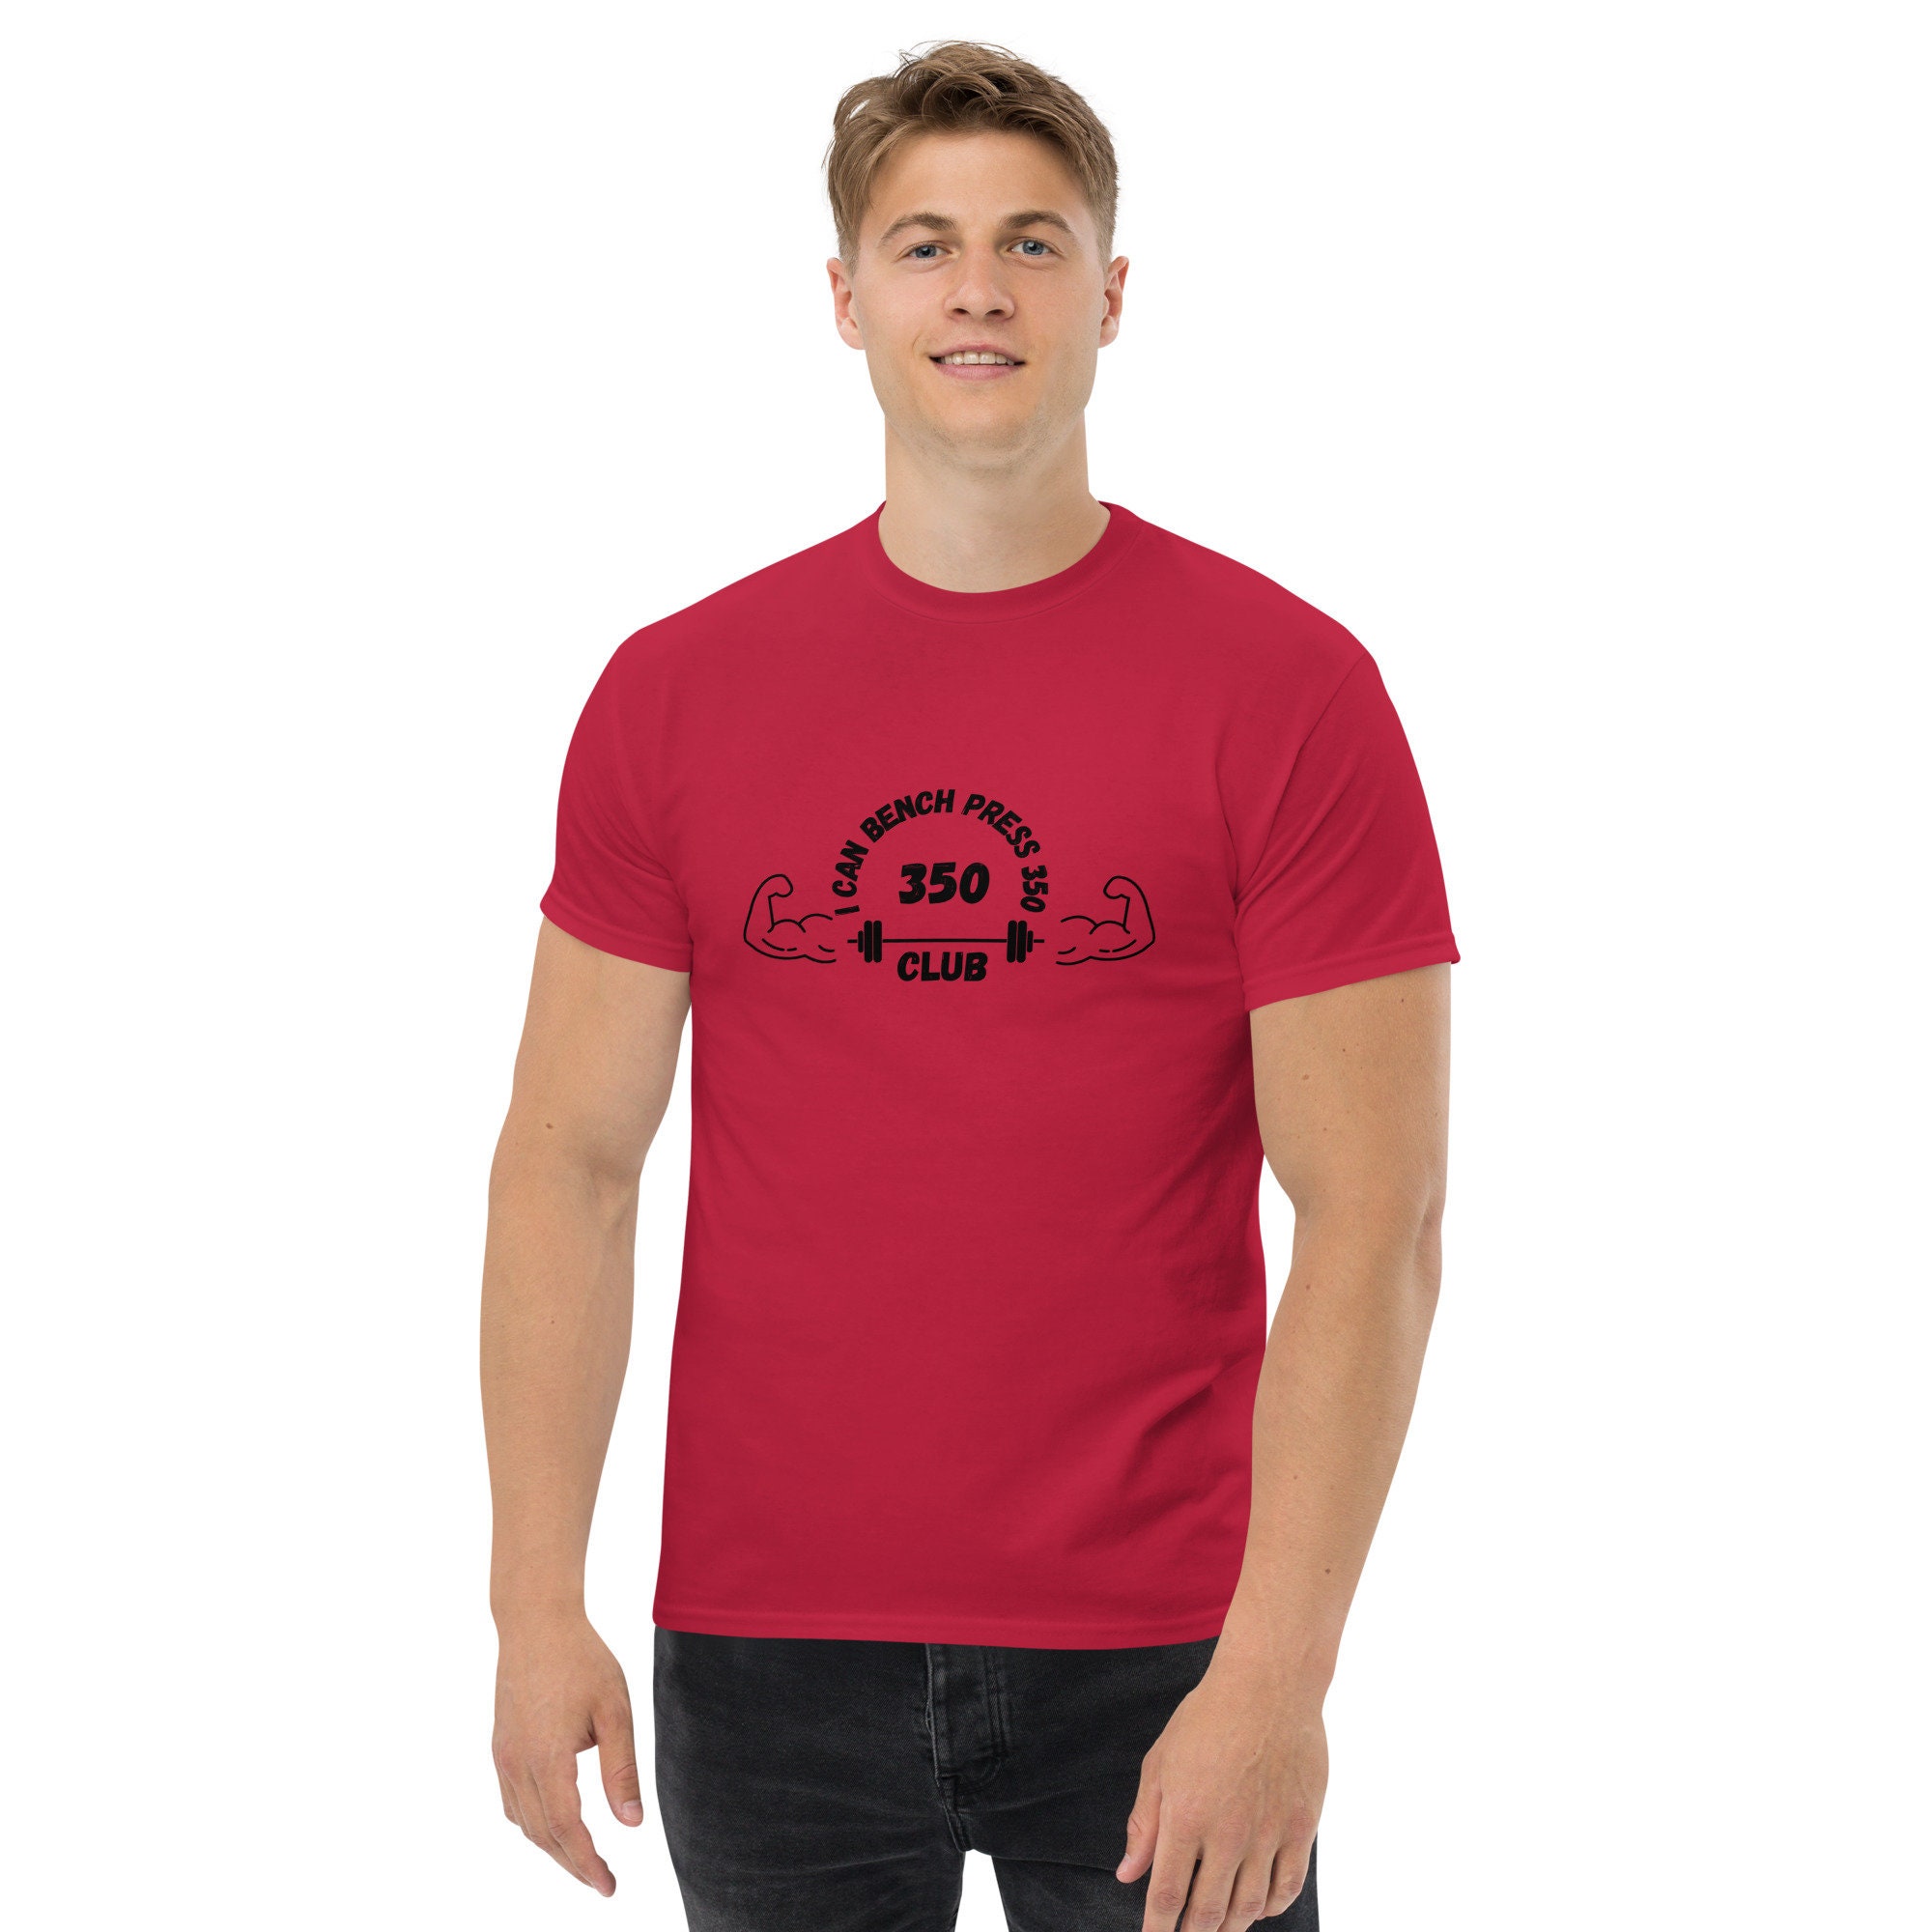 Men's 350 Bench Press Club Classic T-shirt - Etsy